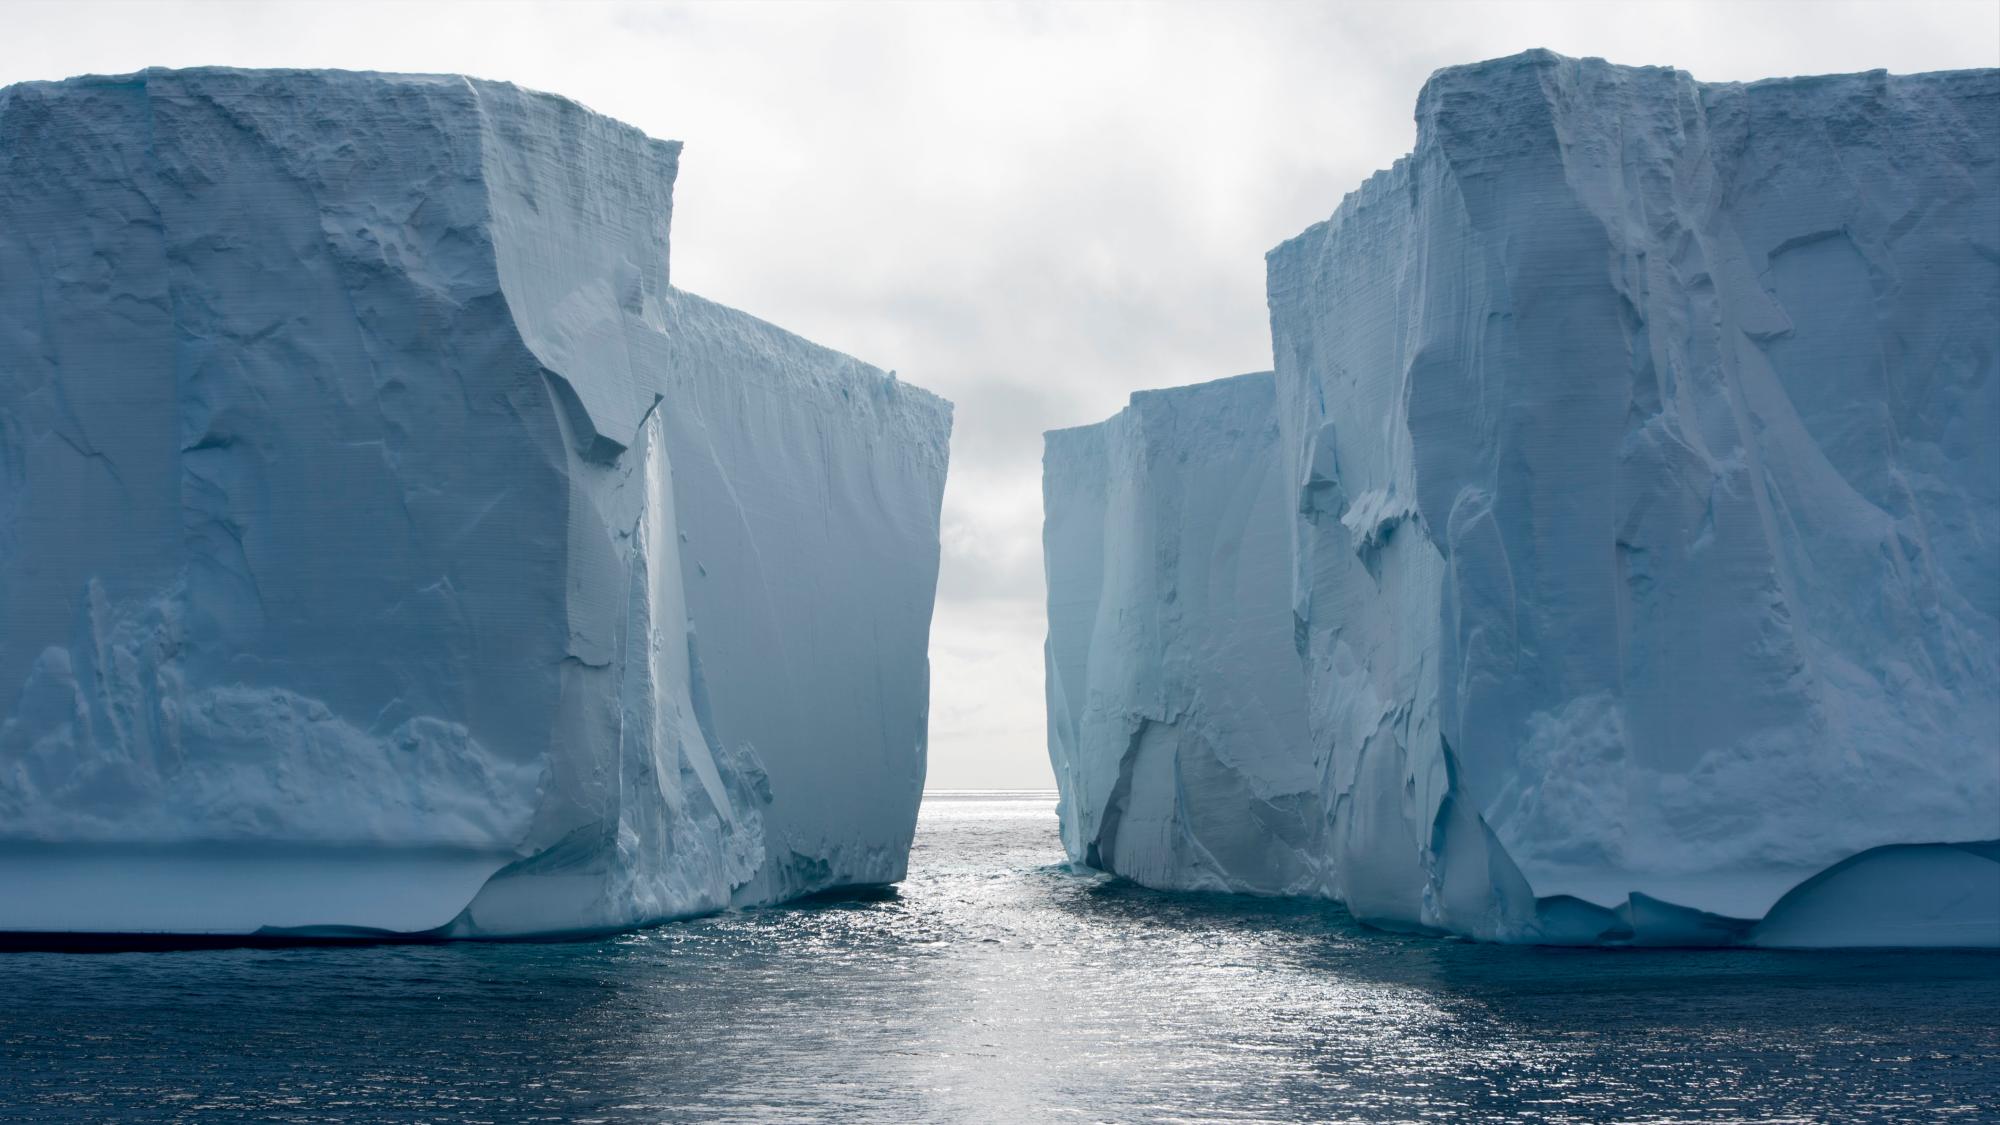 Pingüinos y glaciares, víctimas del cambio climático en la Antártida
Pingüinos de Adelia cerca de la isla Paulet, en la Antártida. 
Pingüino de la isla Paulet, en la Antártida.